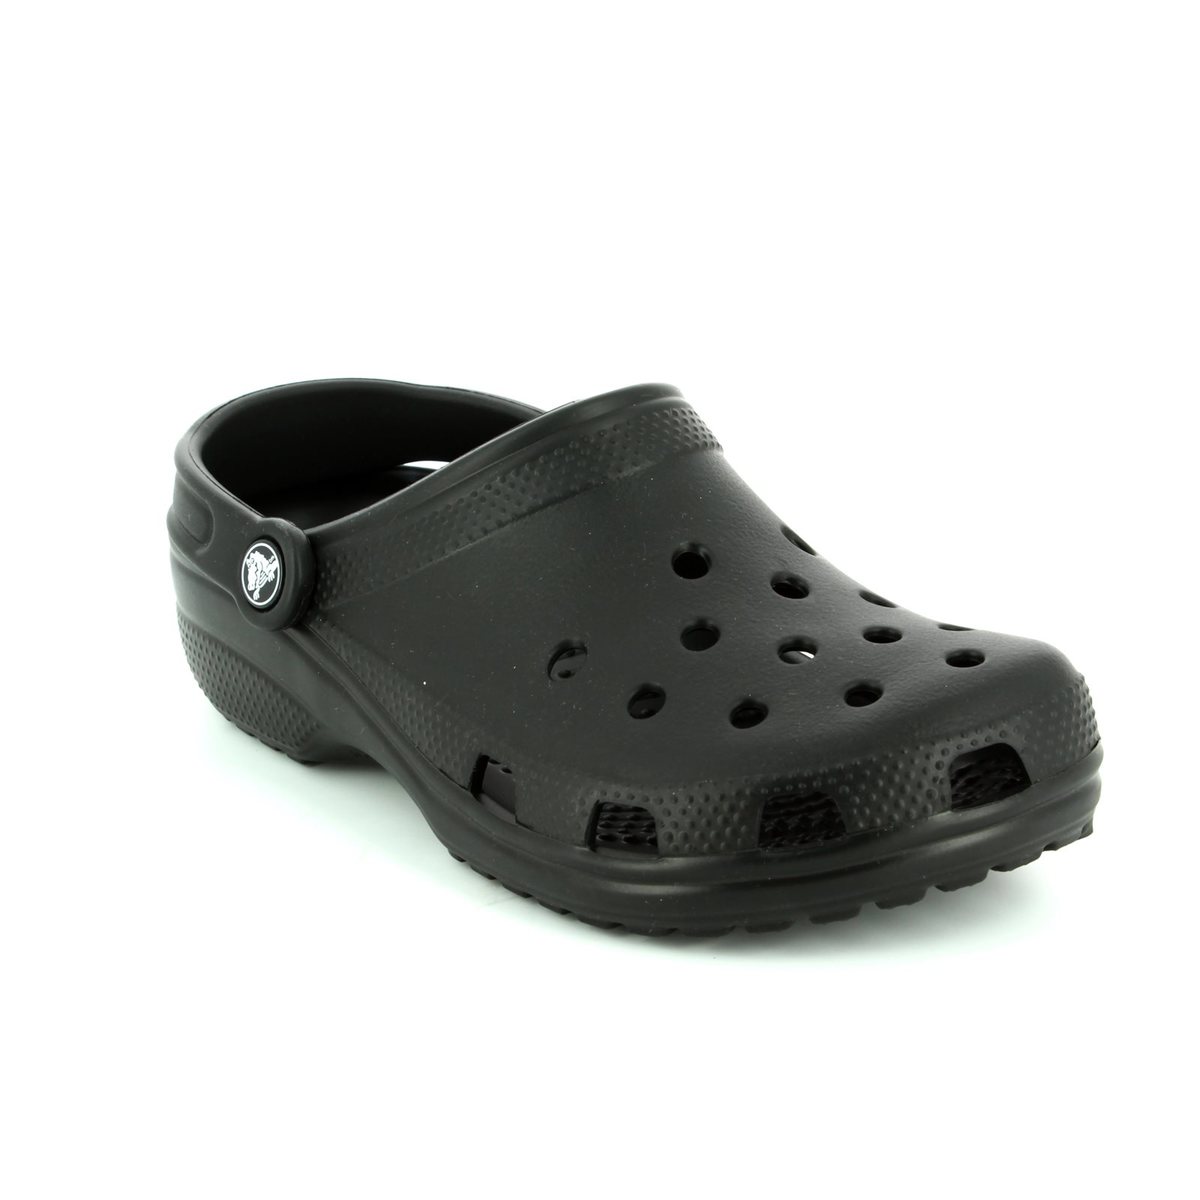 shoes like crocs comfort